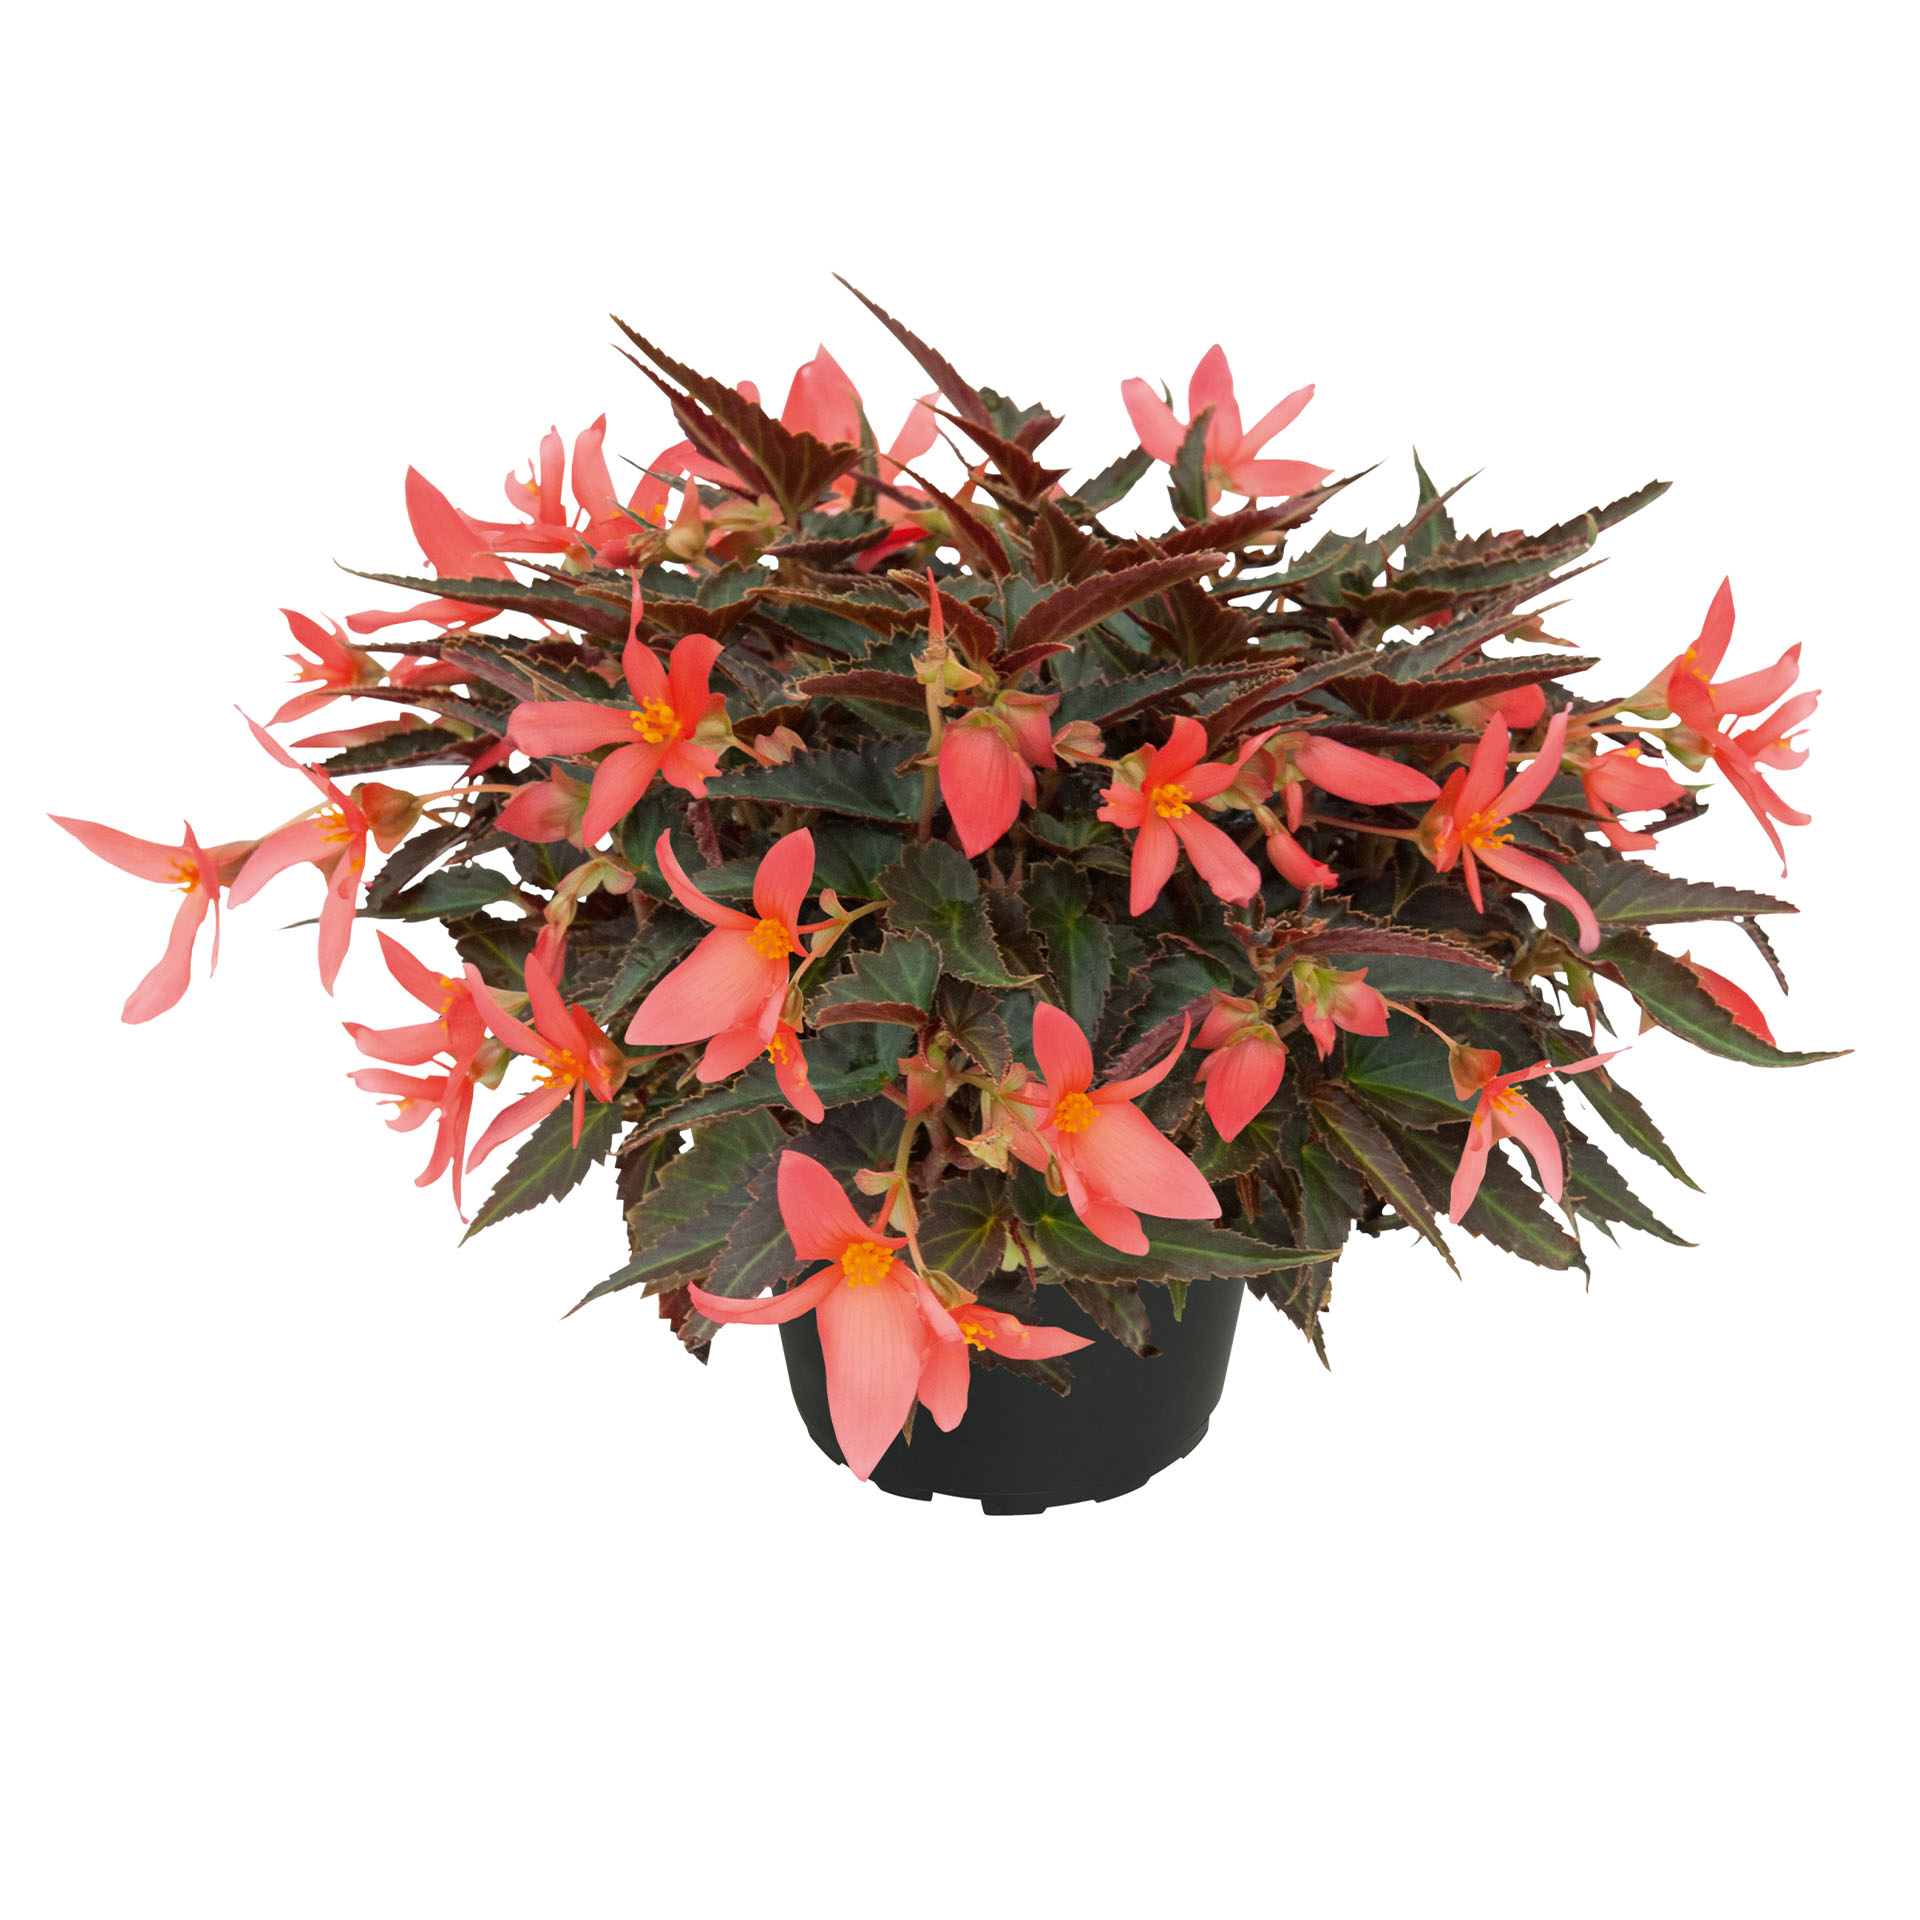 Hängebegonie - Begonia 'Summerwings Dark Coral Elegance', 12cm Topf